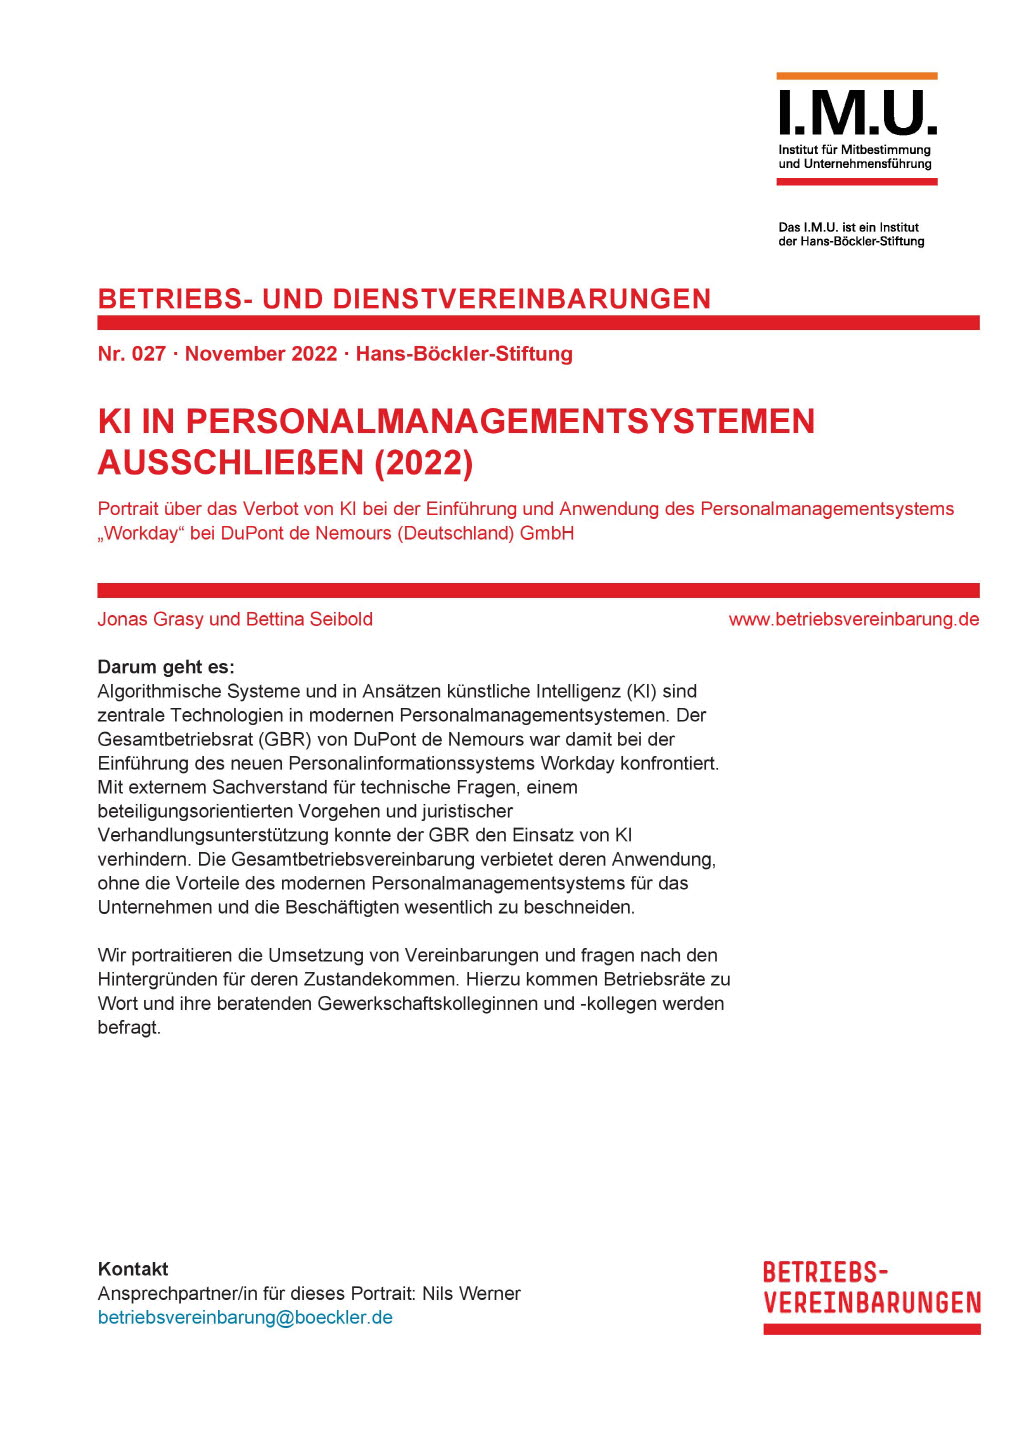 KI in Personalmanagementsystemen ausschließen (2022)